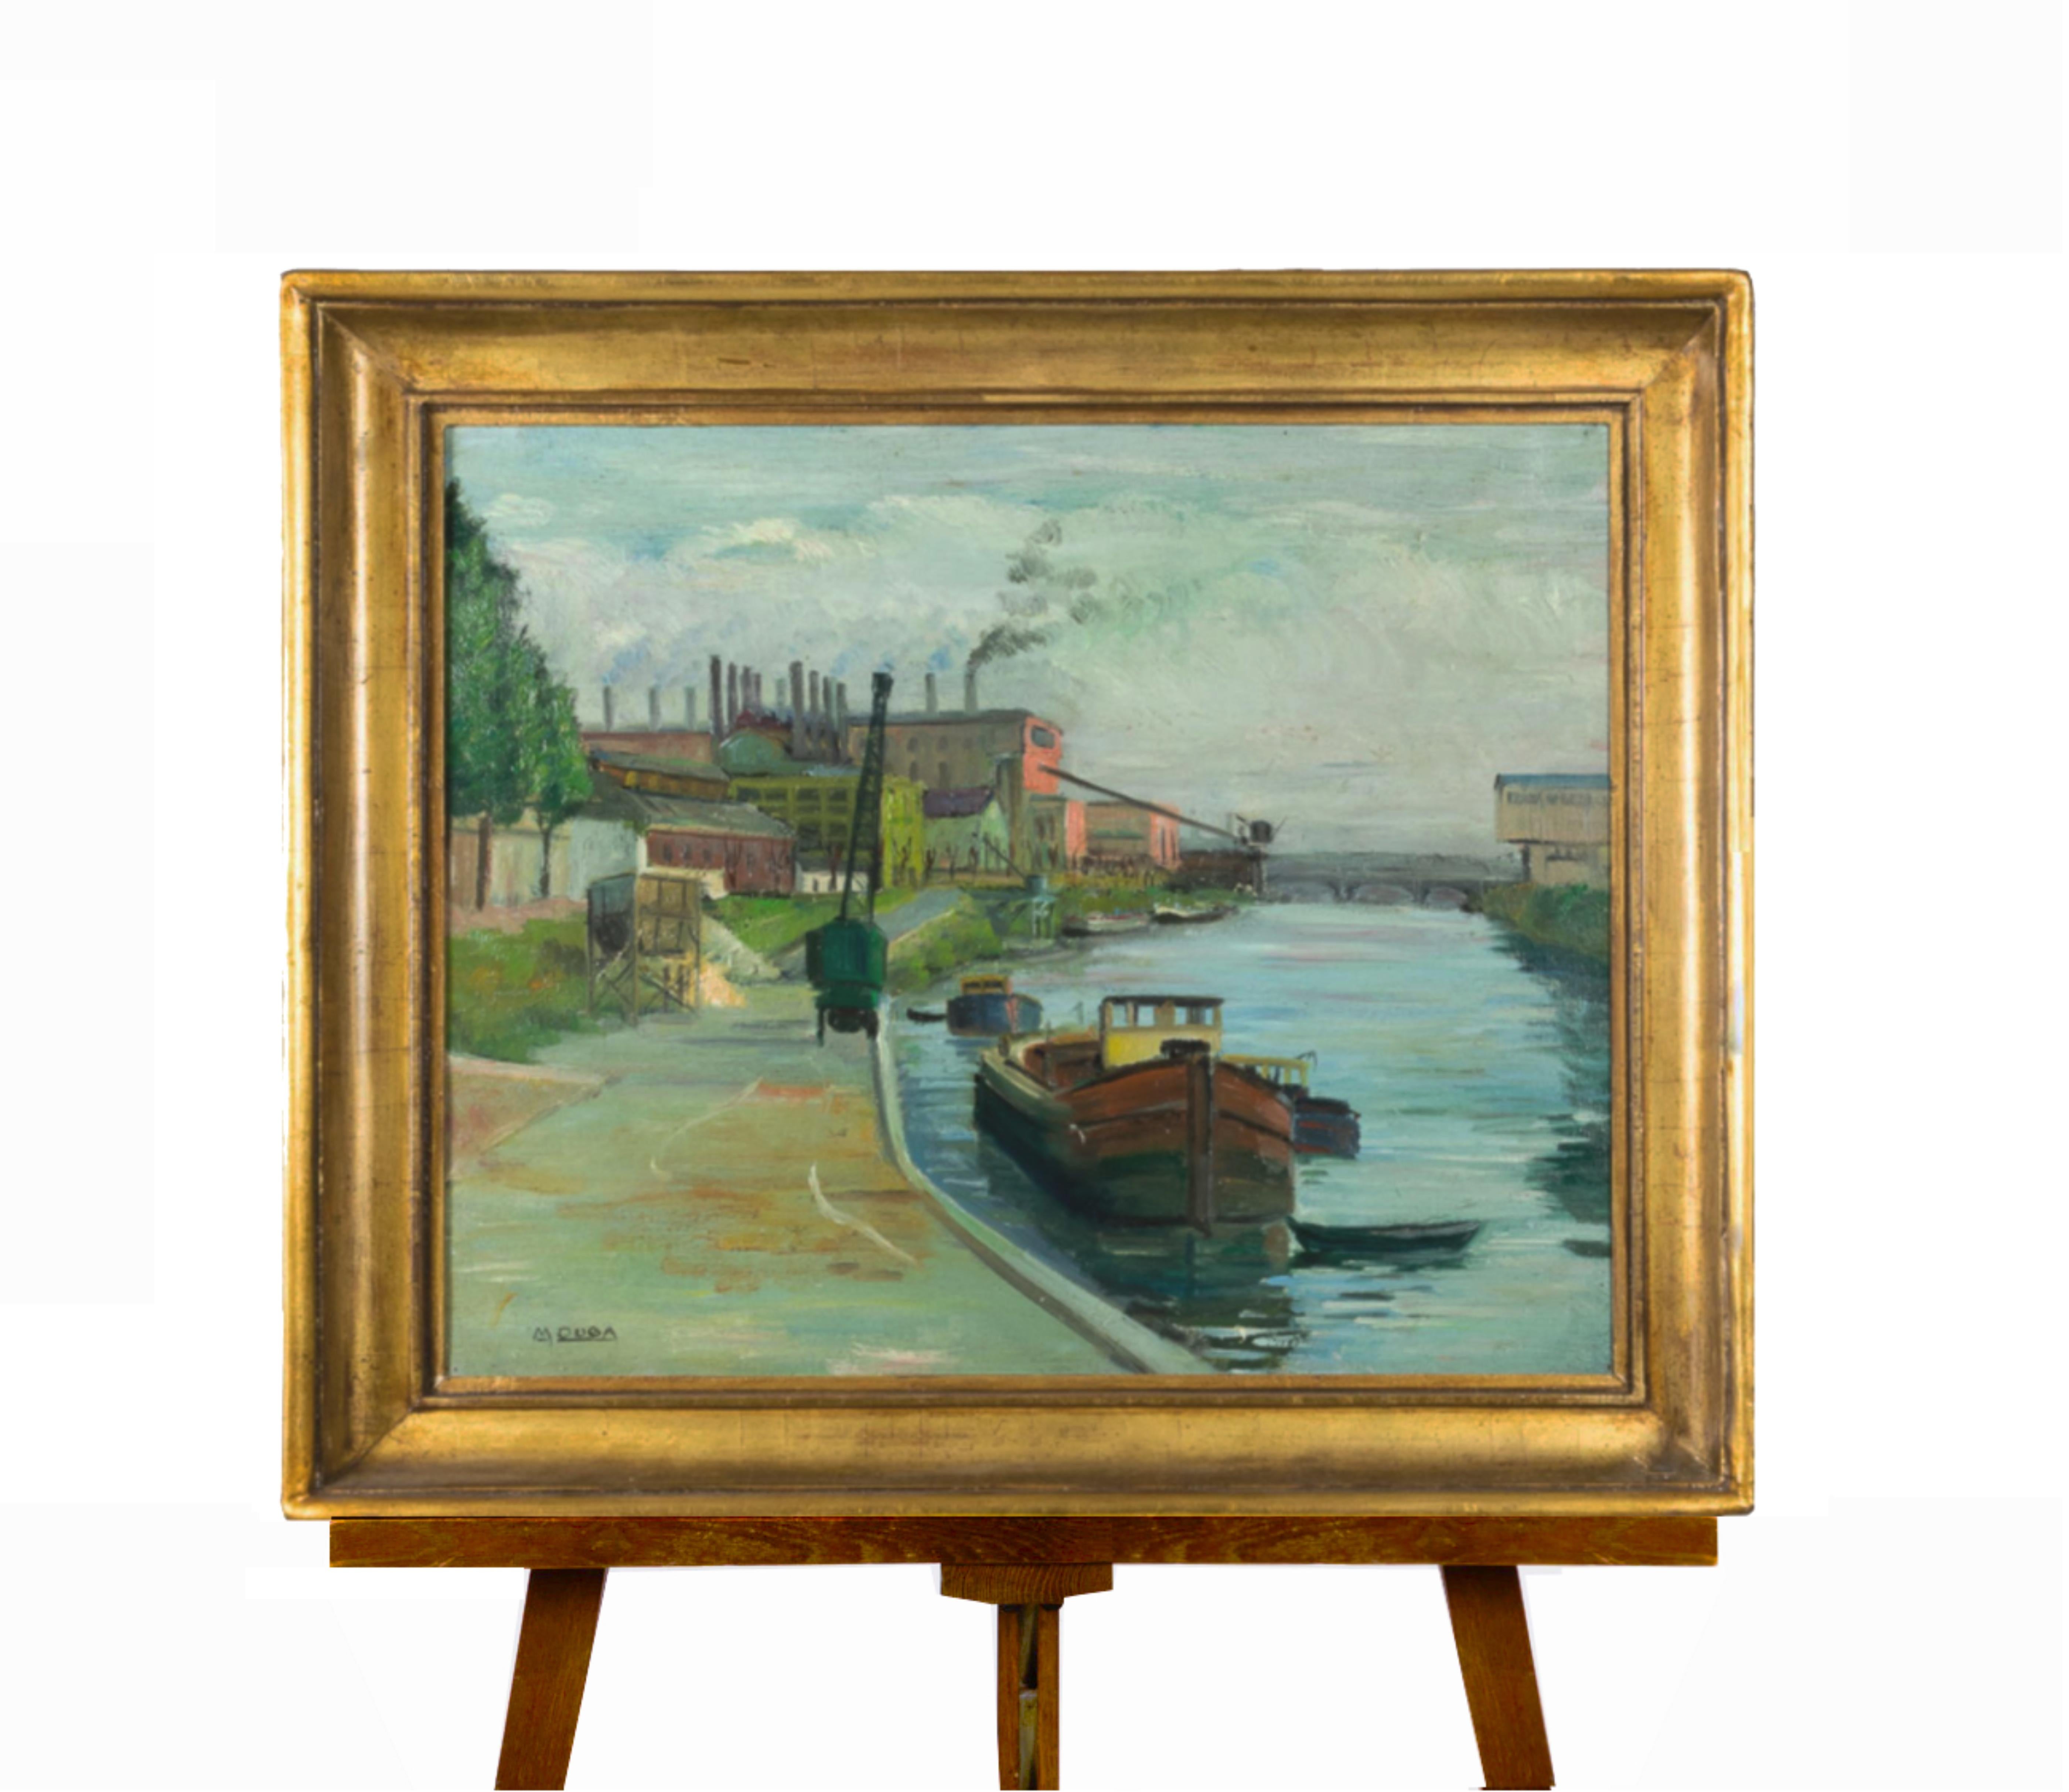 Cette belle peinture post-impressionniste représente un bateau fluvial français glissant sur un canal, avec une usine et un chantier naval visibles à l'arrière-plan. Elle est signée par l'artiste M-One dans le coin, comme le montrent les